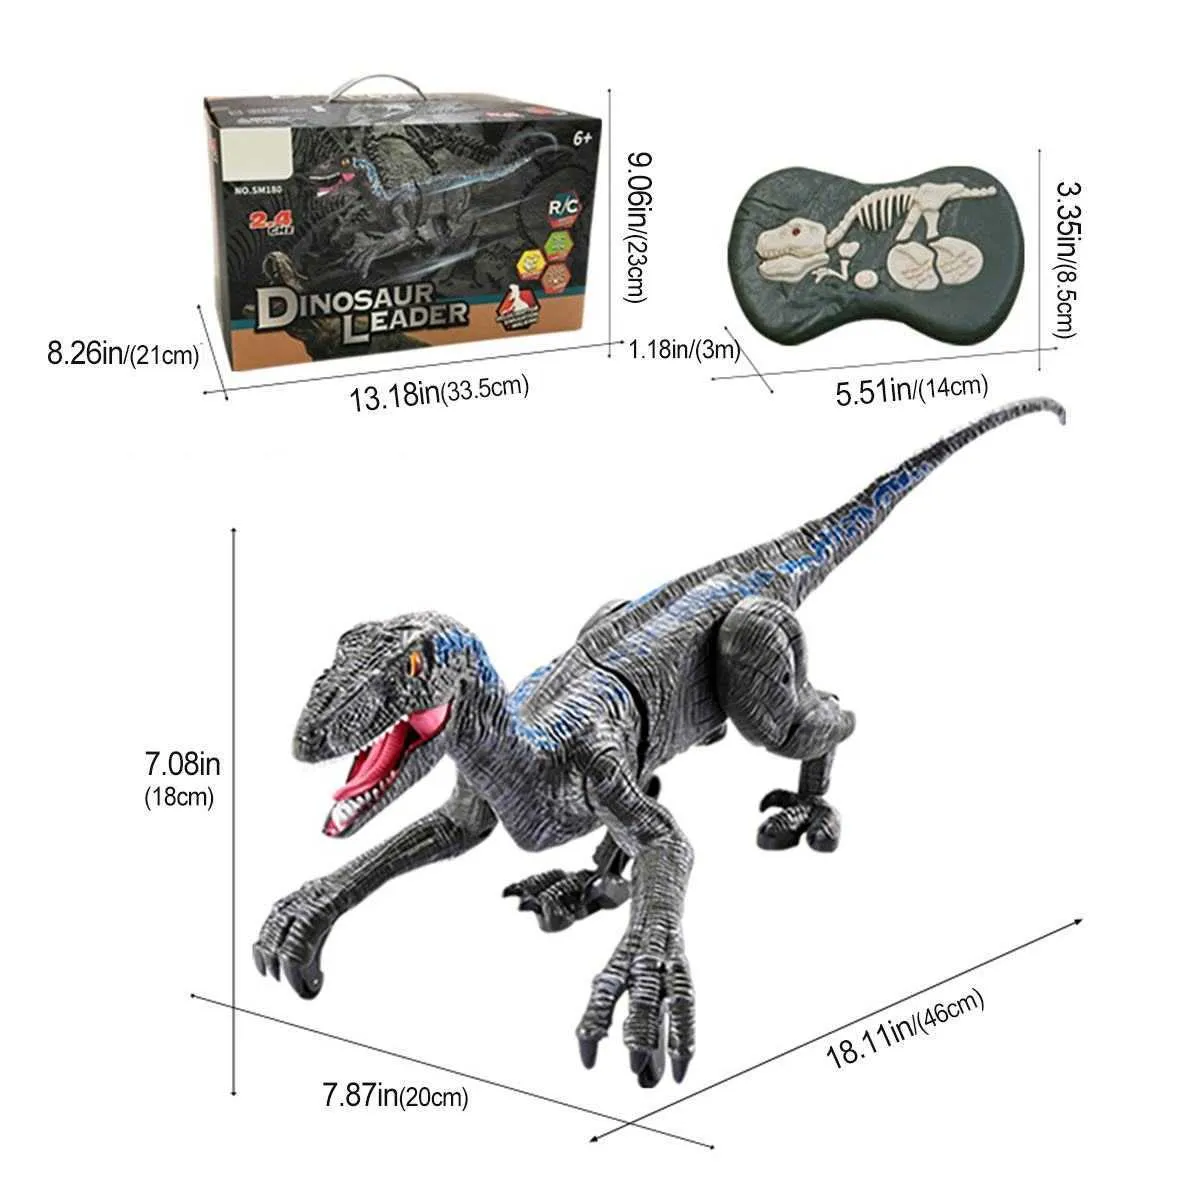 24 GHz neuer RC Dinosaurier Raptor Velociraptor Roar Wanderlicht Elektrische Fernbedienung Tiermodell Kinder Spielzeug Jungen Kinder Geschenke Q8904100